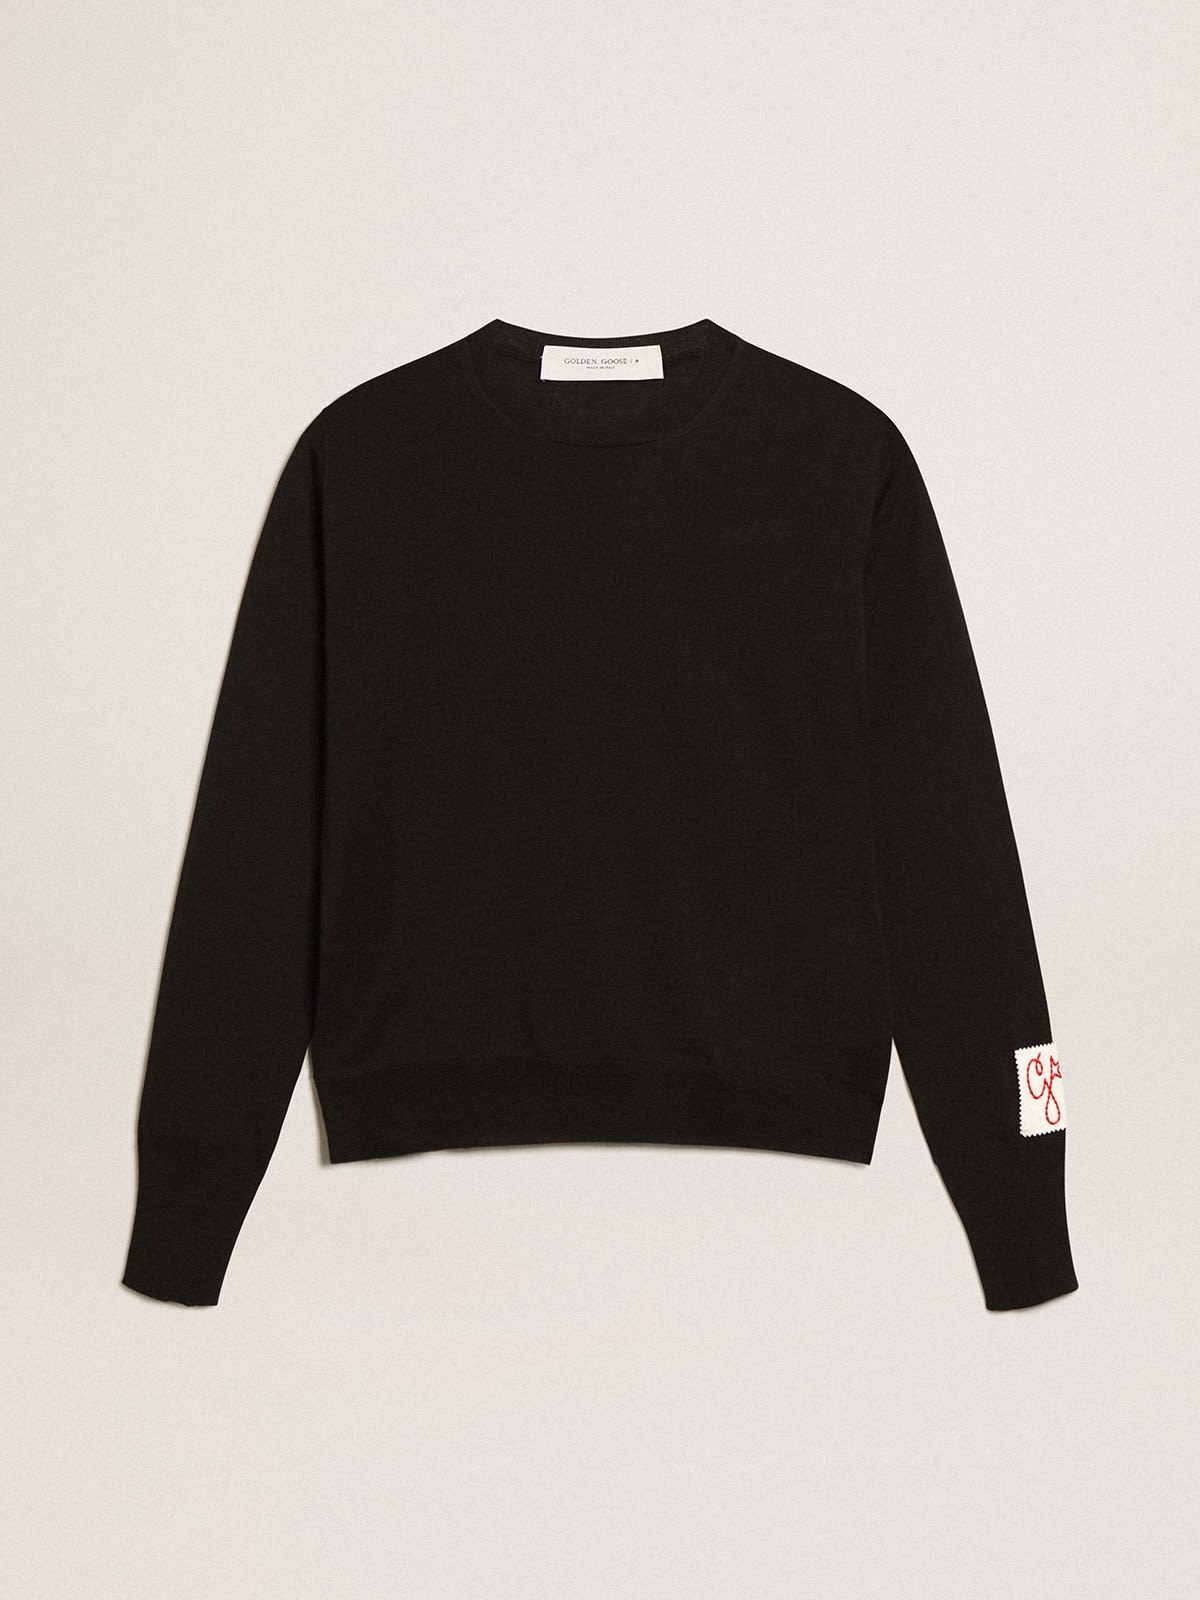 Women's round-neck sweater in black wool - 1